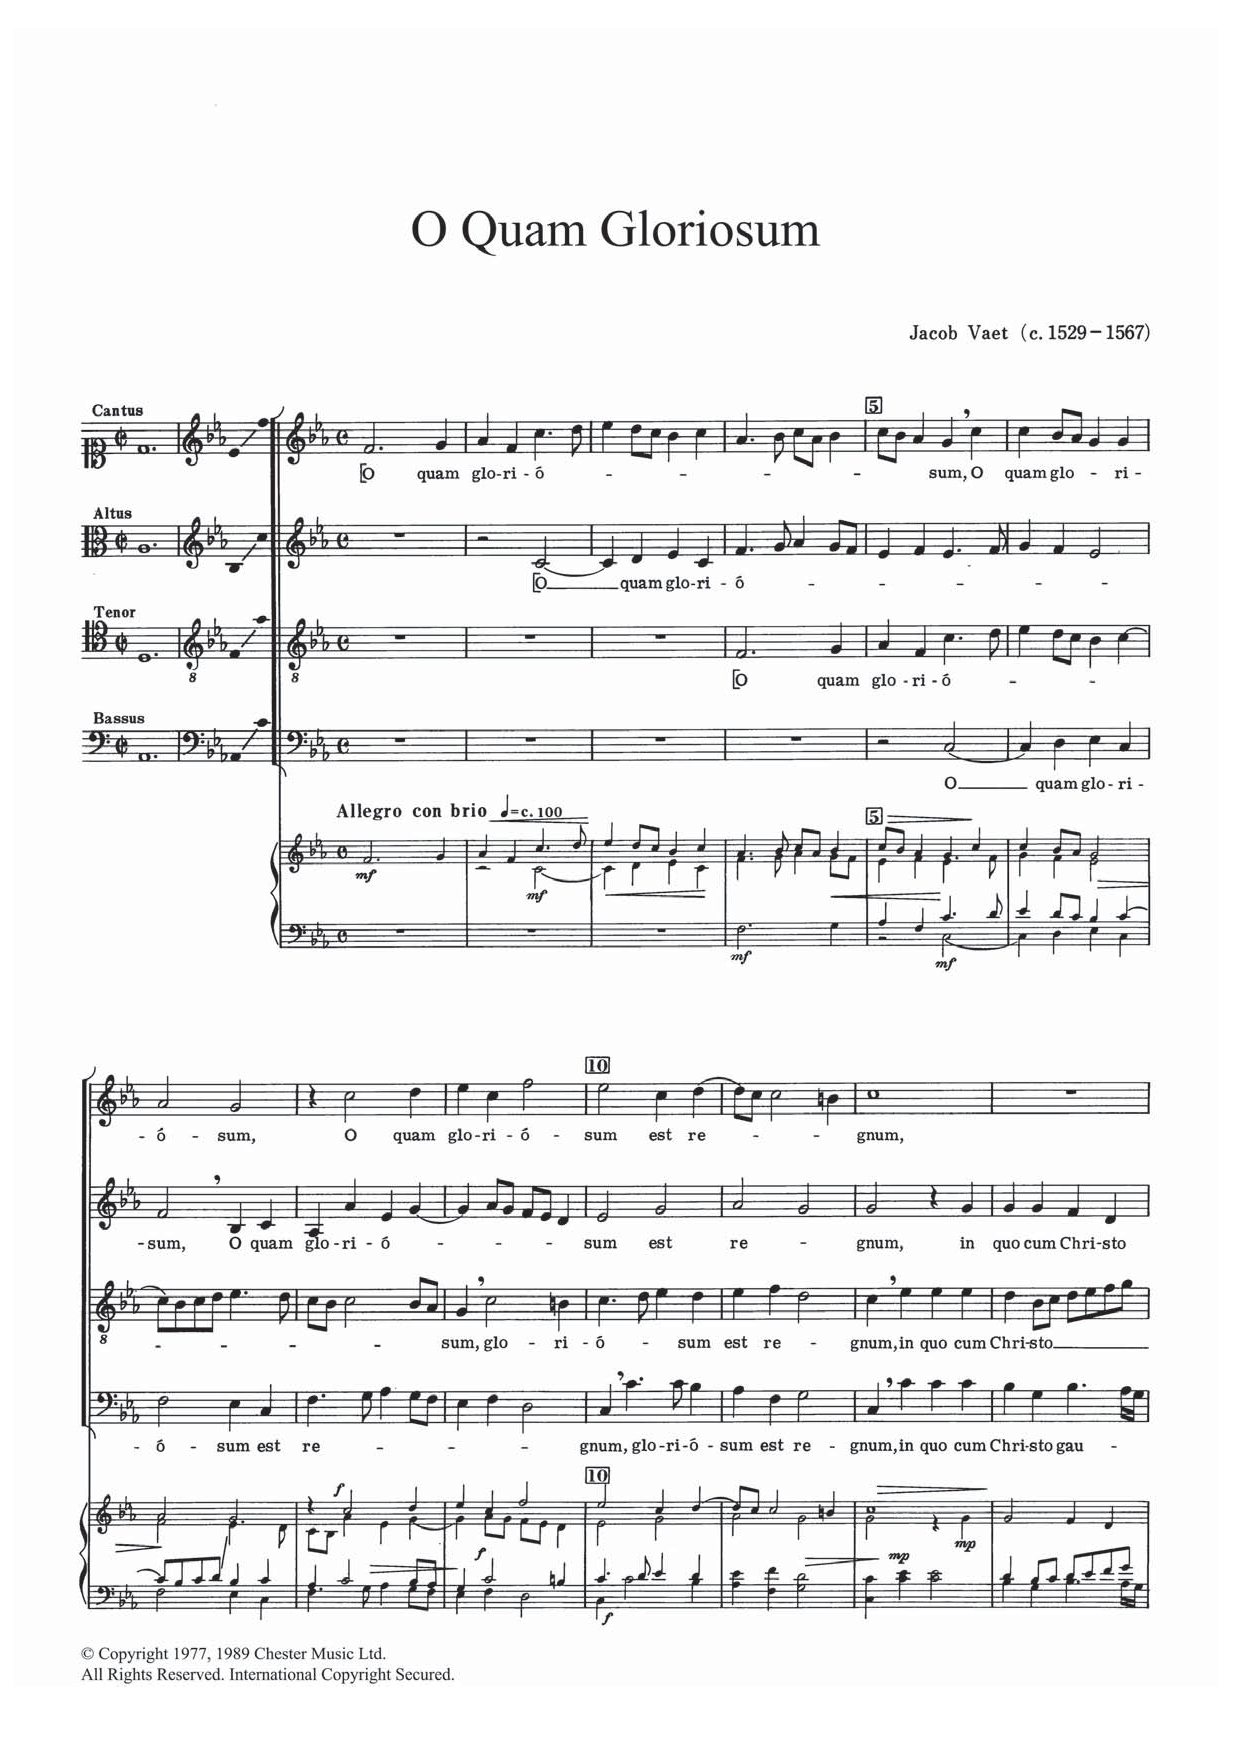 Jacob Vaet O Quam Gloriosum sheet music notes and chords arranged for SATB Choir